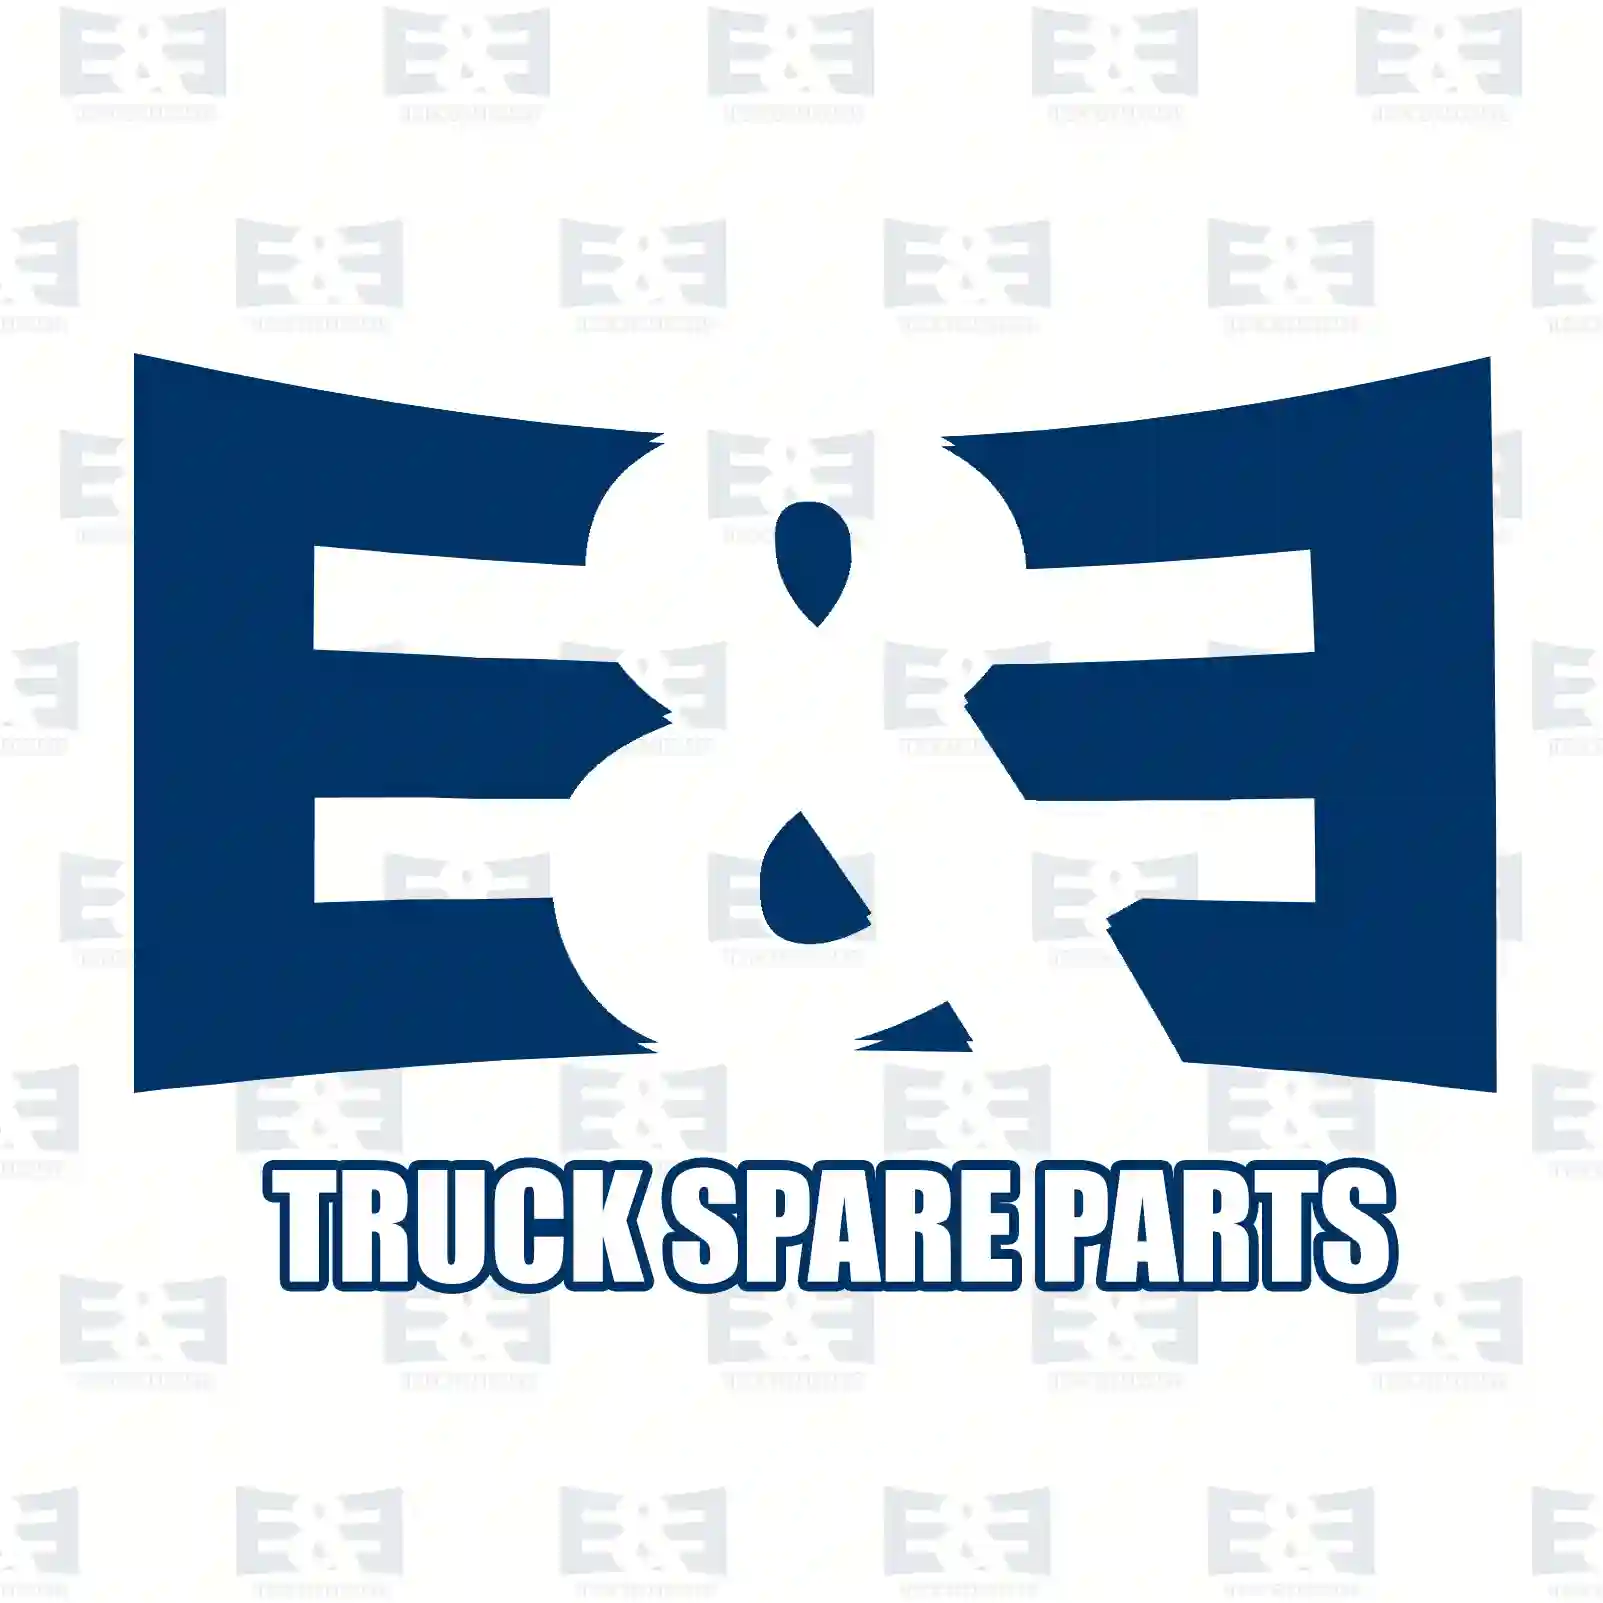 Warning label, 2E2285166, , , ||  2E2285166 E&E Truck Spare Parts | Truck Spare Parts, Auotomotive Spare Parts Warning label, 2E2285166, , , ||  2E2285166 E&E Truck Spare Parts | Truck Spare Parts, Auotomotive Spare Parts